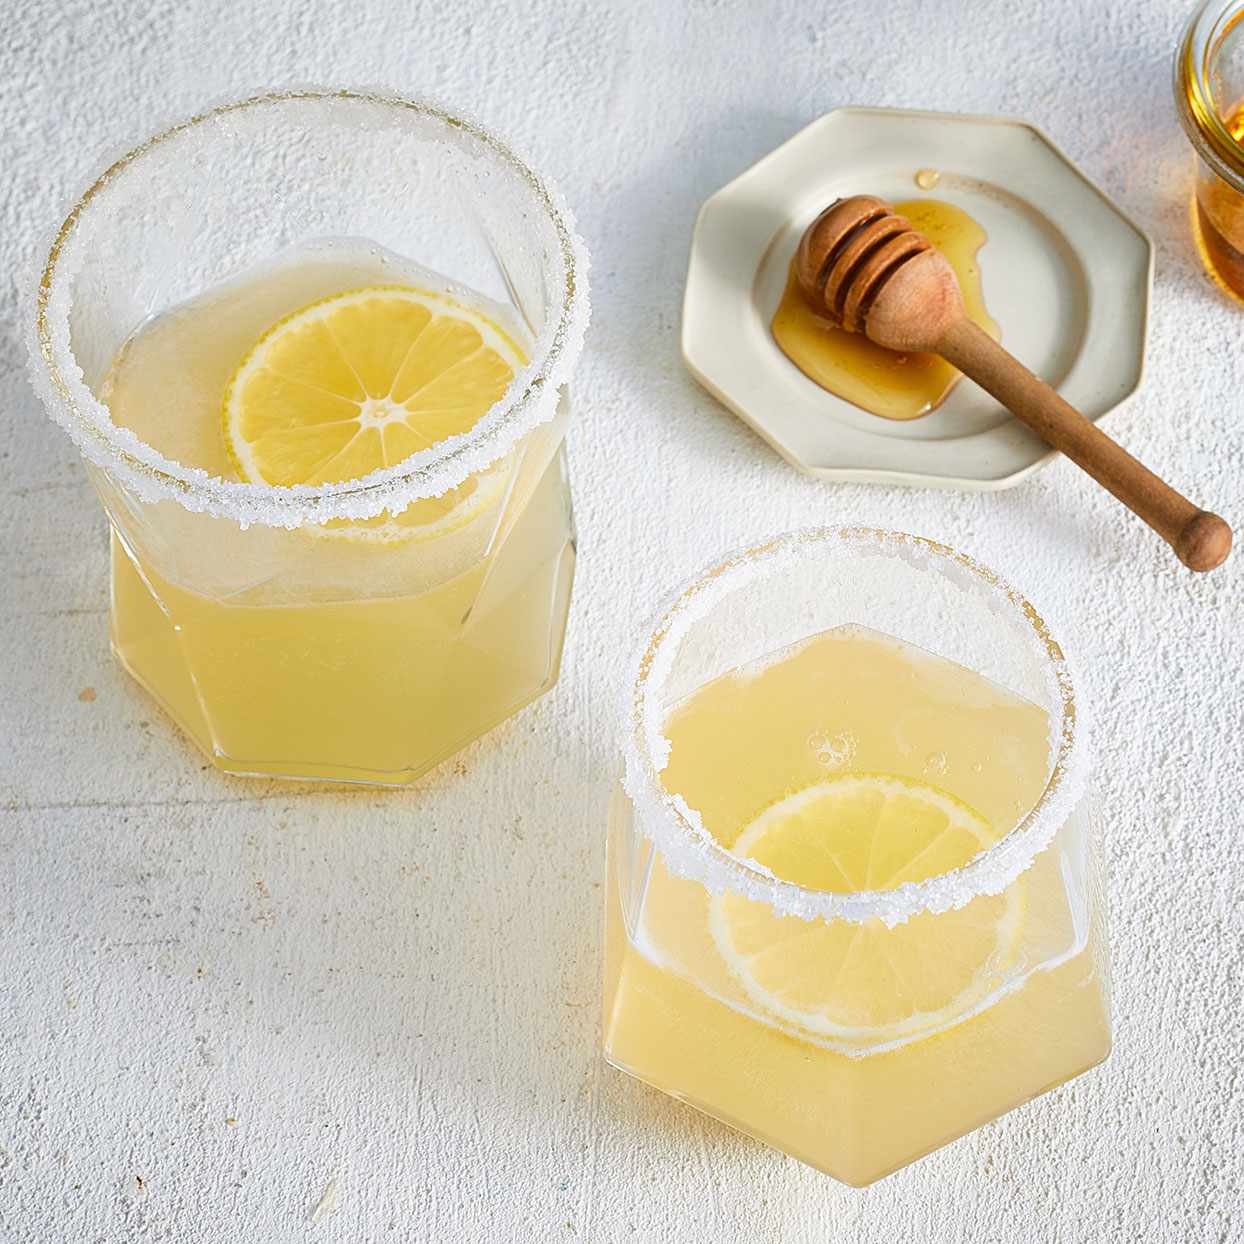 Honey Lemon Drop